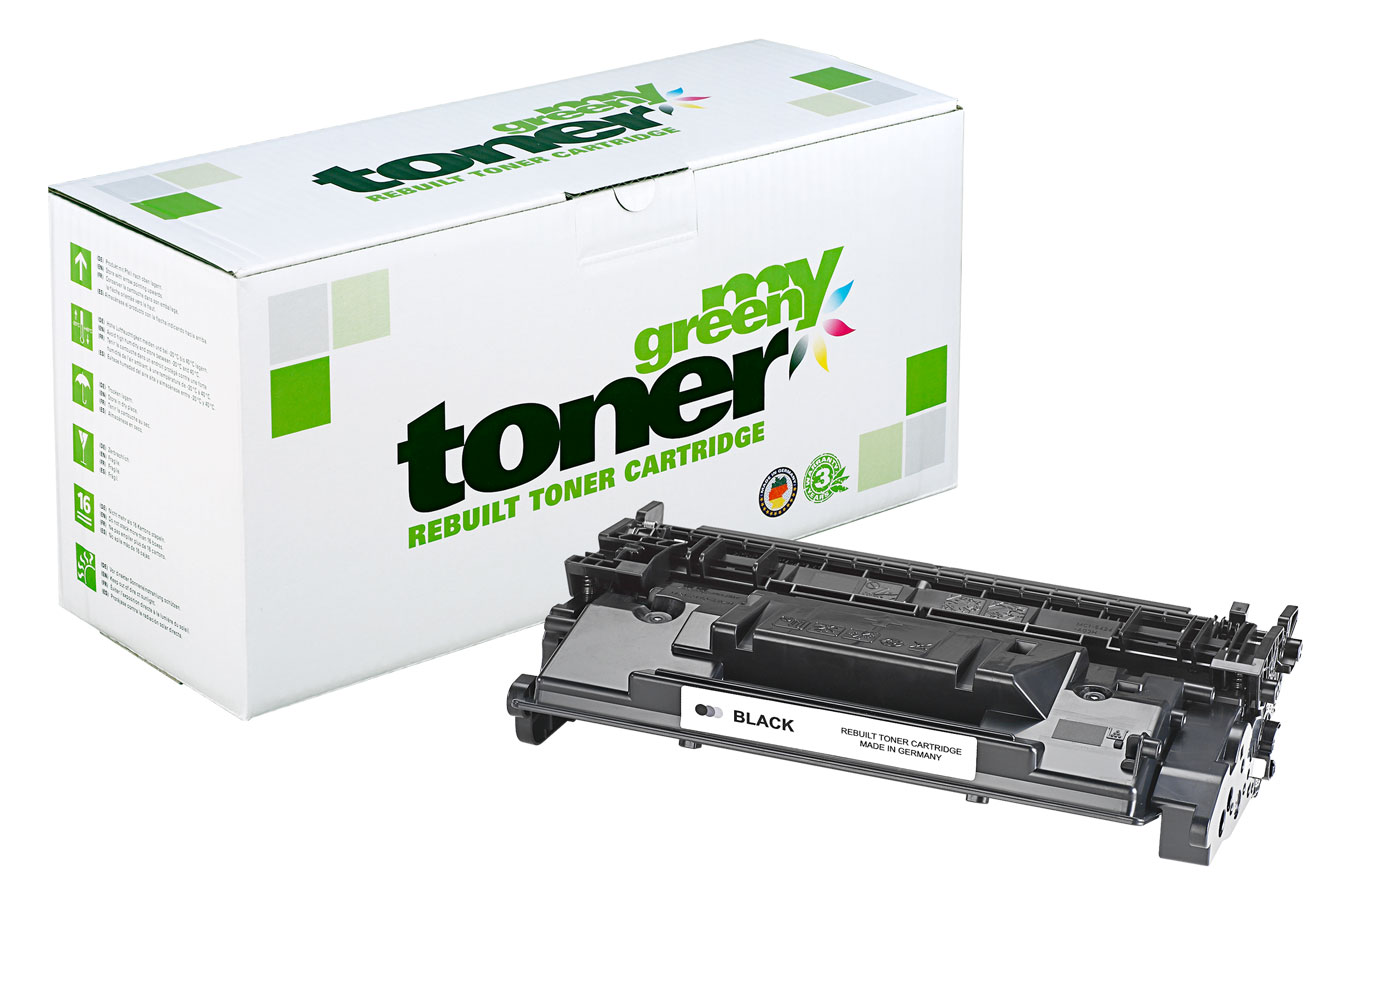 Rebuilt toner cartridge for HP LaserJet Pro M304, MFP 329 a. o.